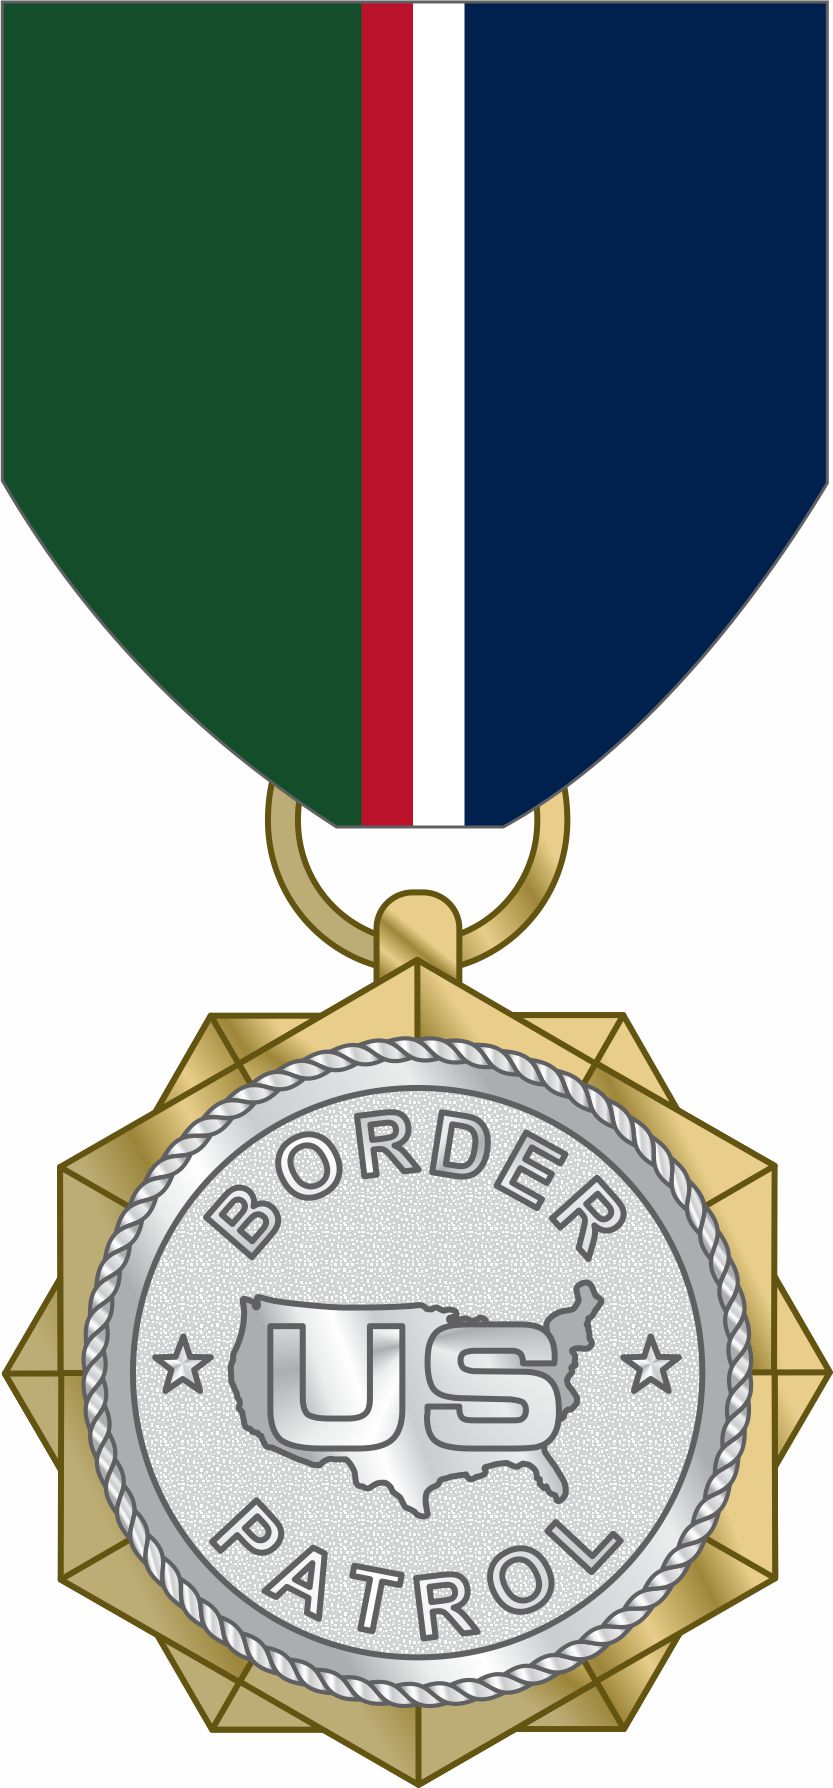 USBP Achievement Medal